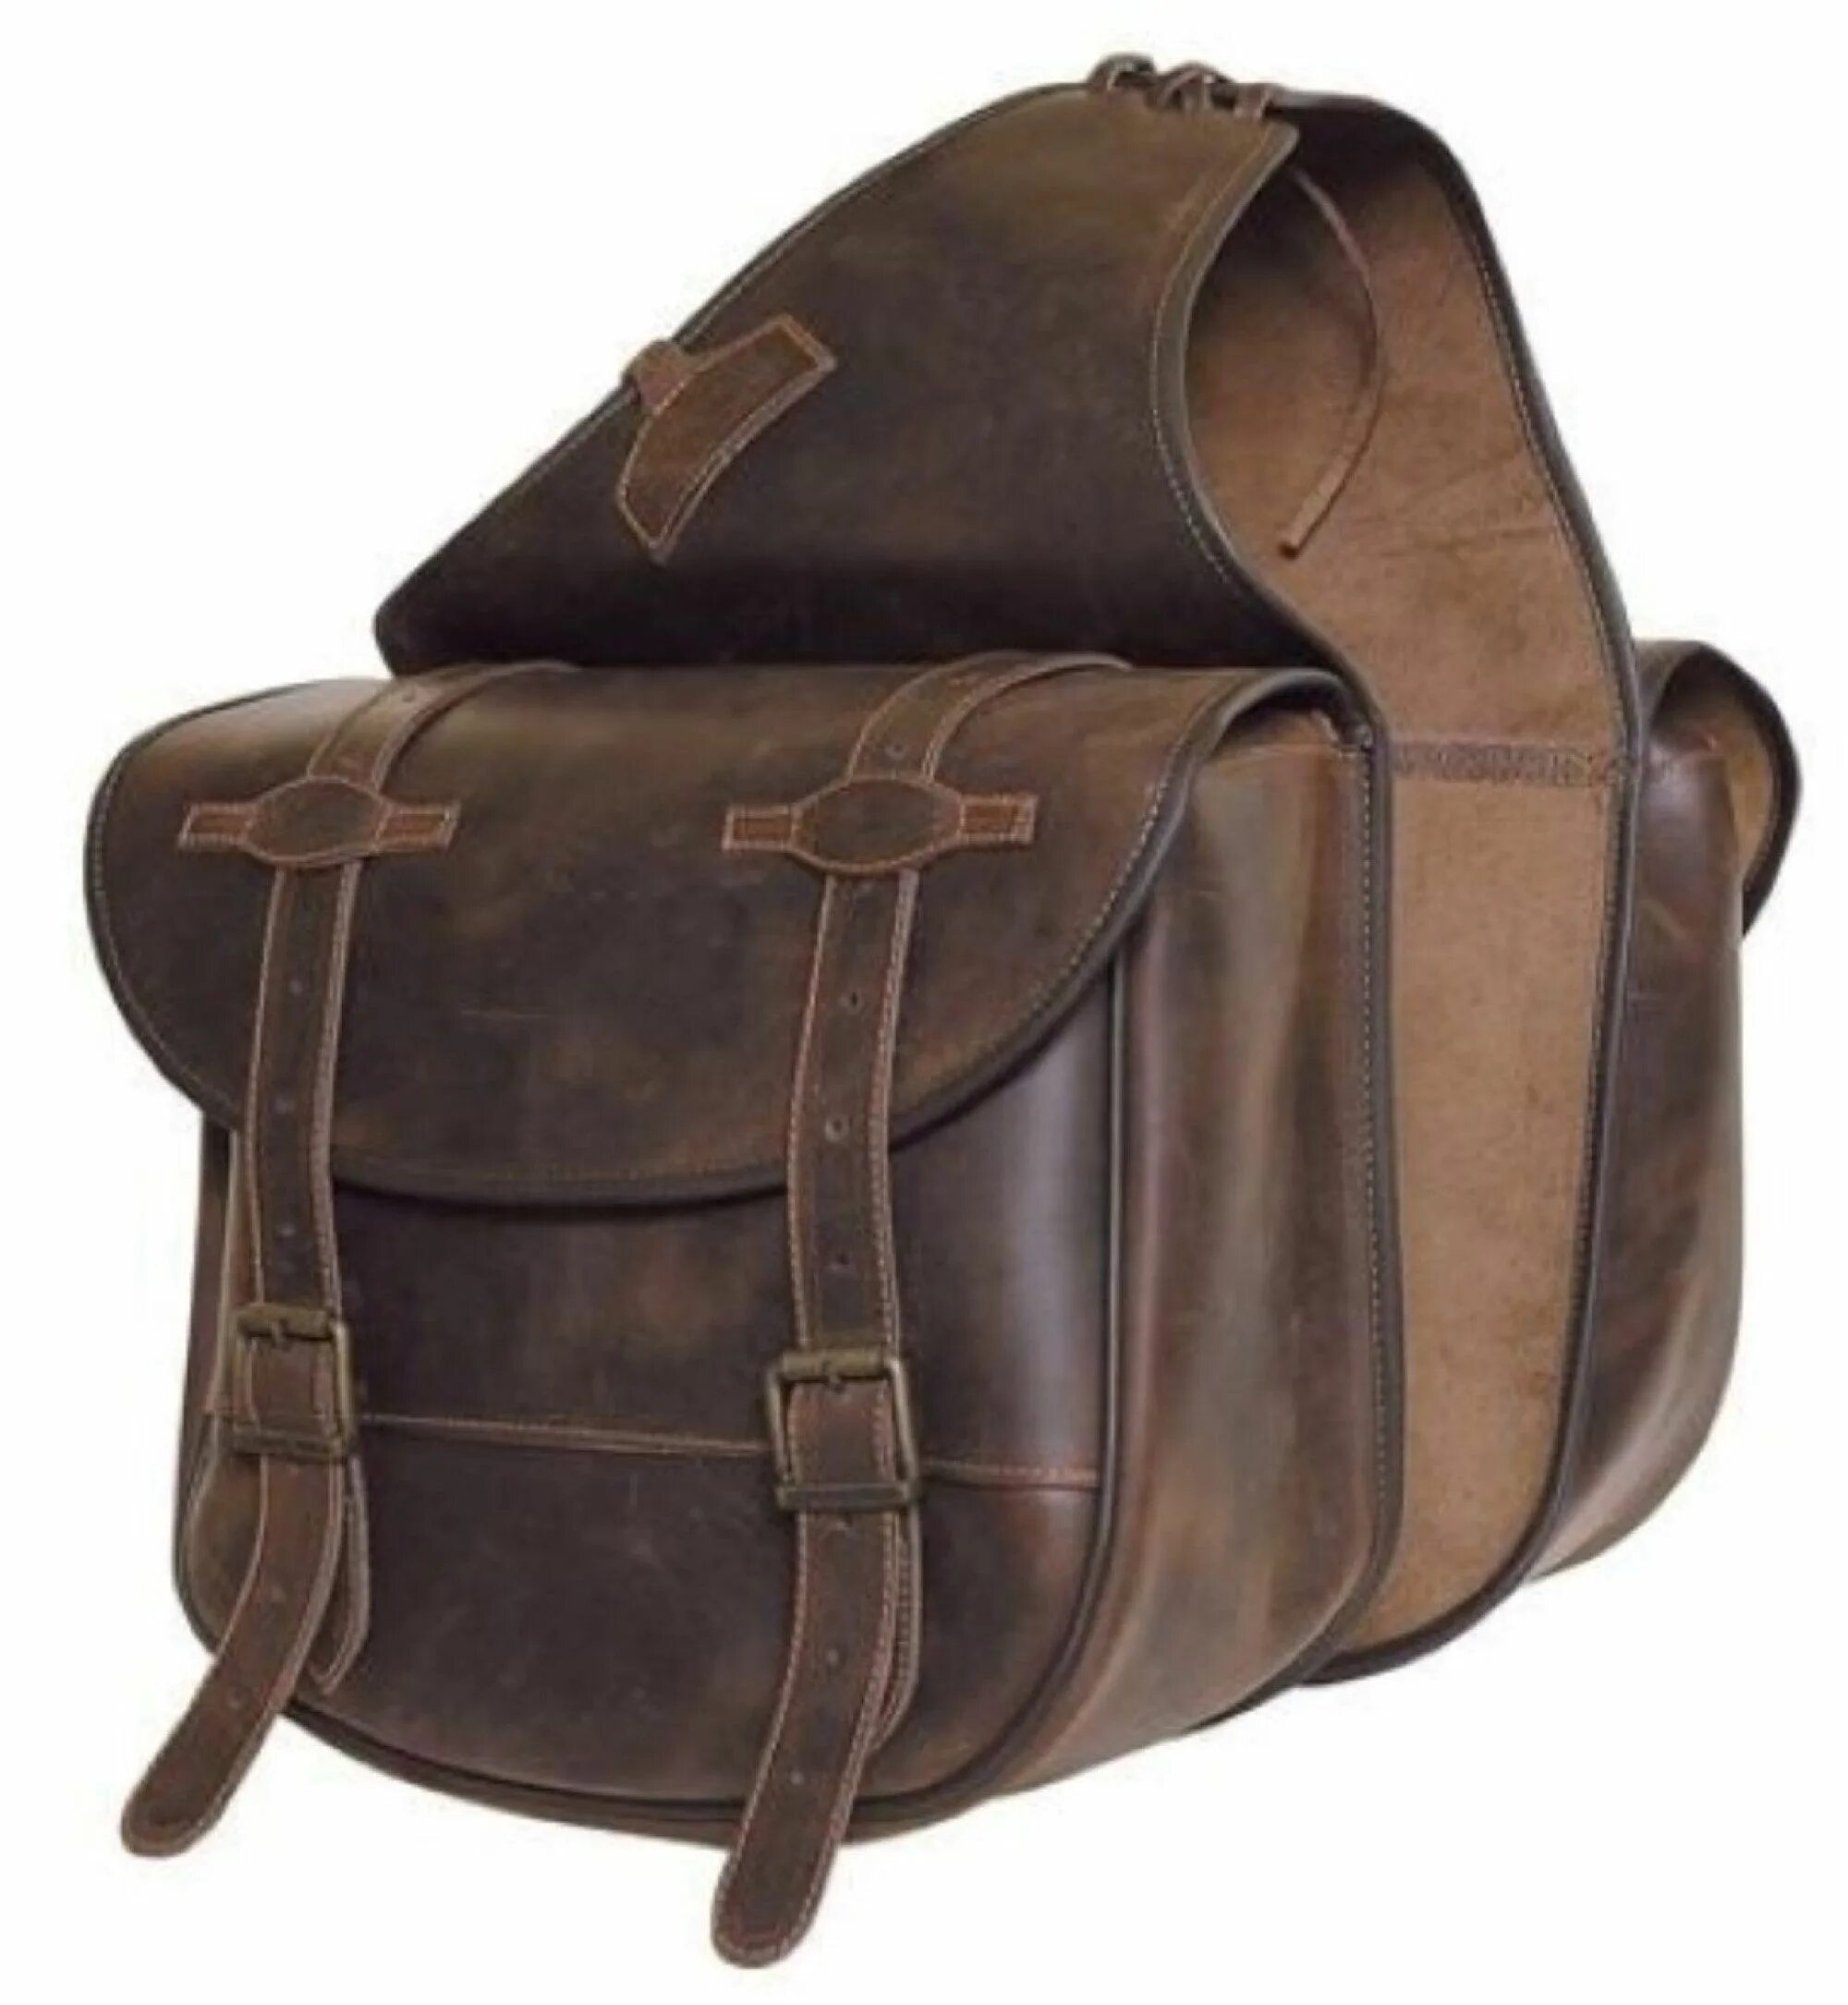 Сума переметная. Вестерн сумка кожаная. Сумка на седло лошади. Чересседельная сумка для лошади. Comancheros сумка.